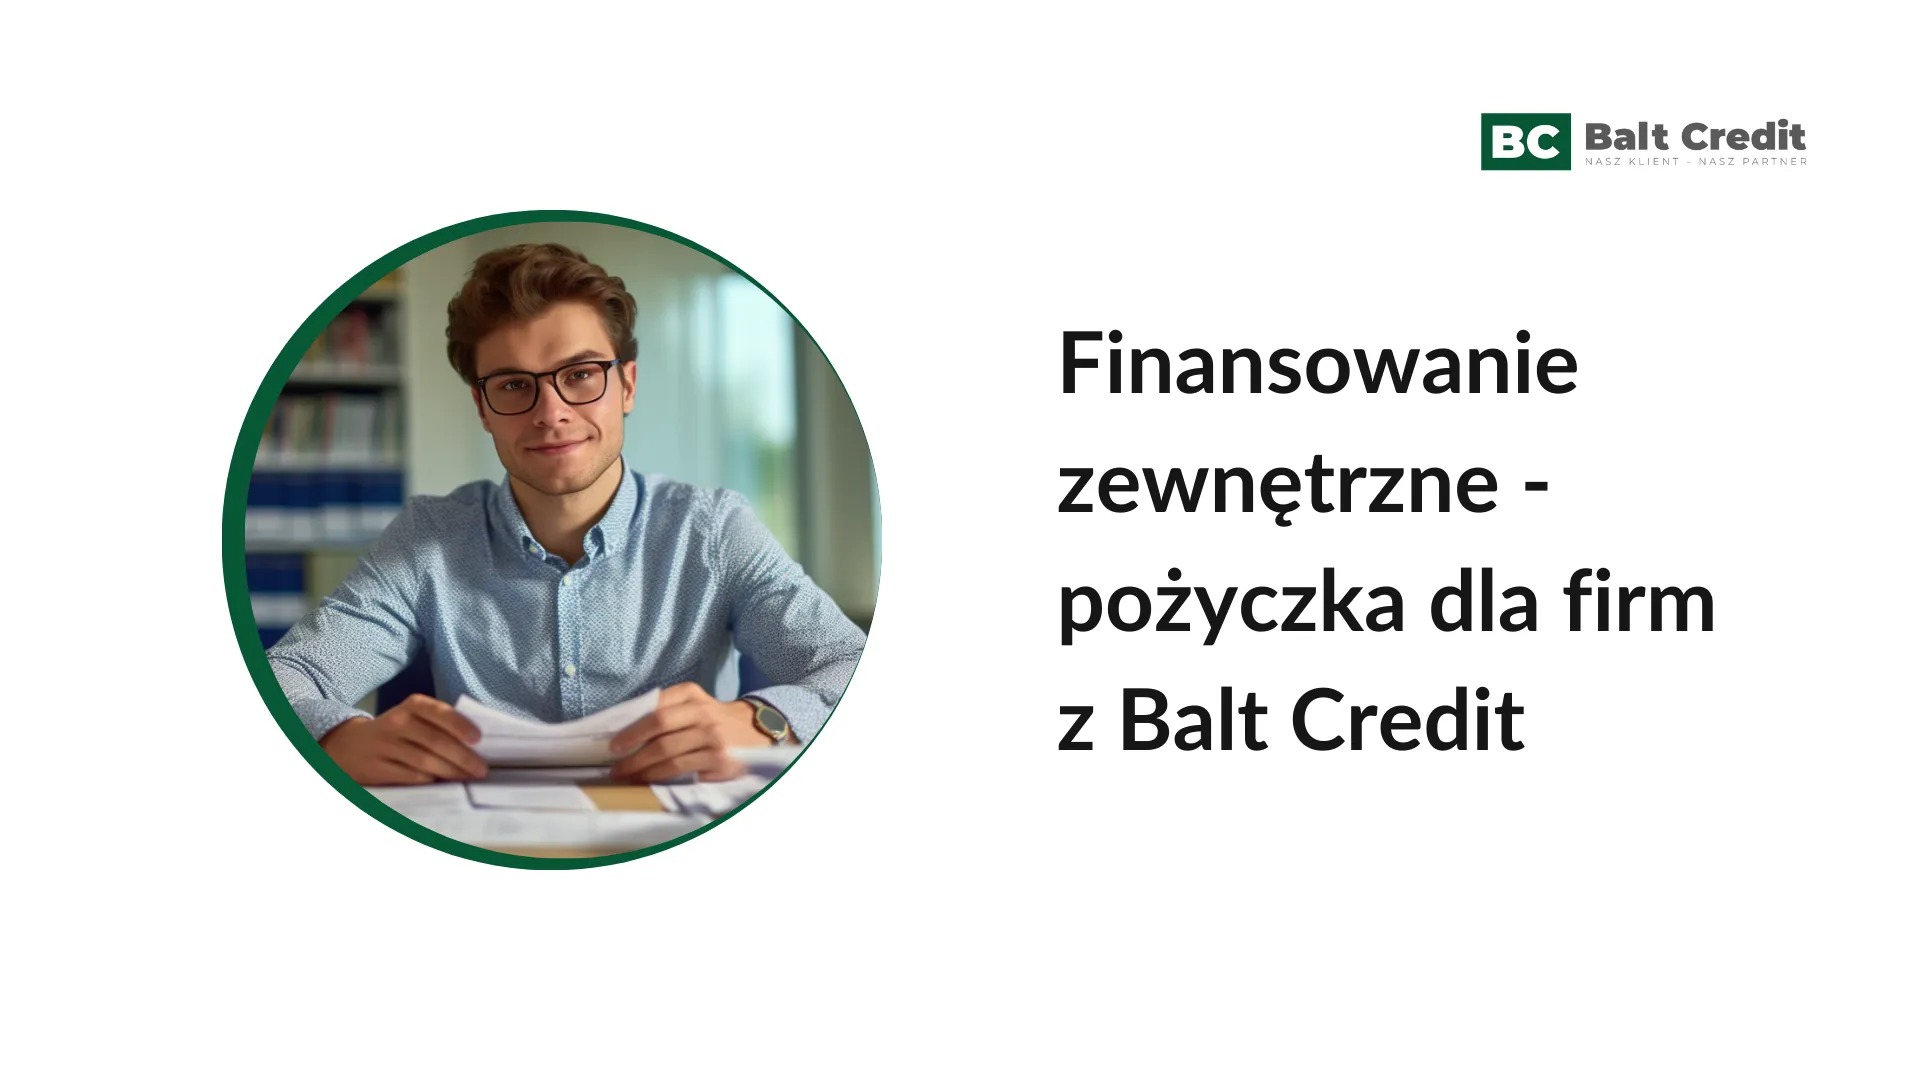 Finansowanie zewnętrzne - pożyczka dla firm z Balt Credit